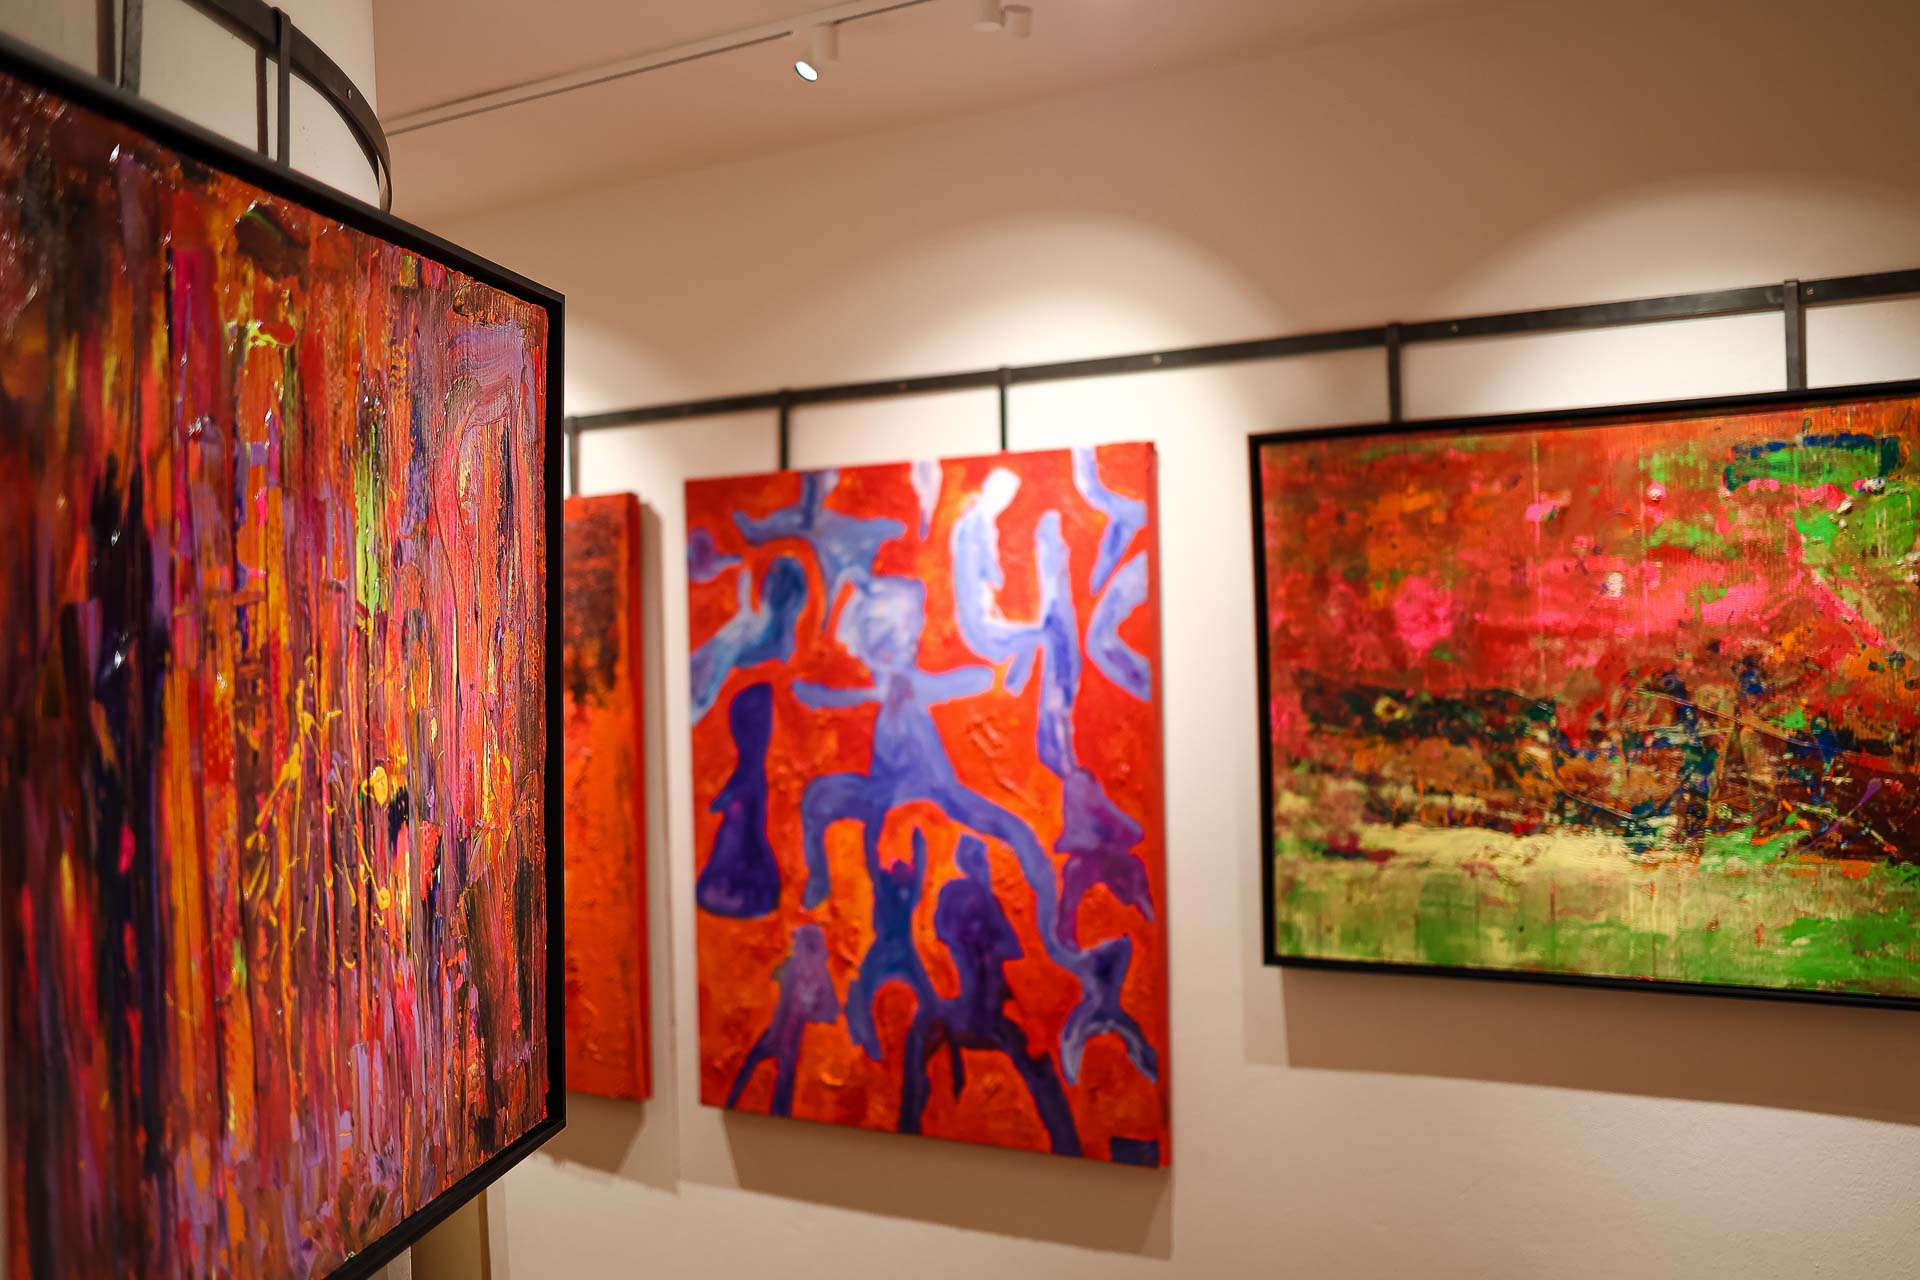 Bewundern Sie die Vielfalt an Farben und Emotionen, die die Werke von Harry Bauer in seiner Galerie widerspiegeln.